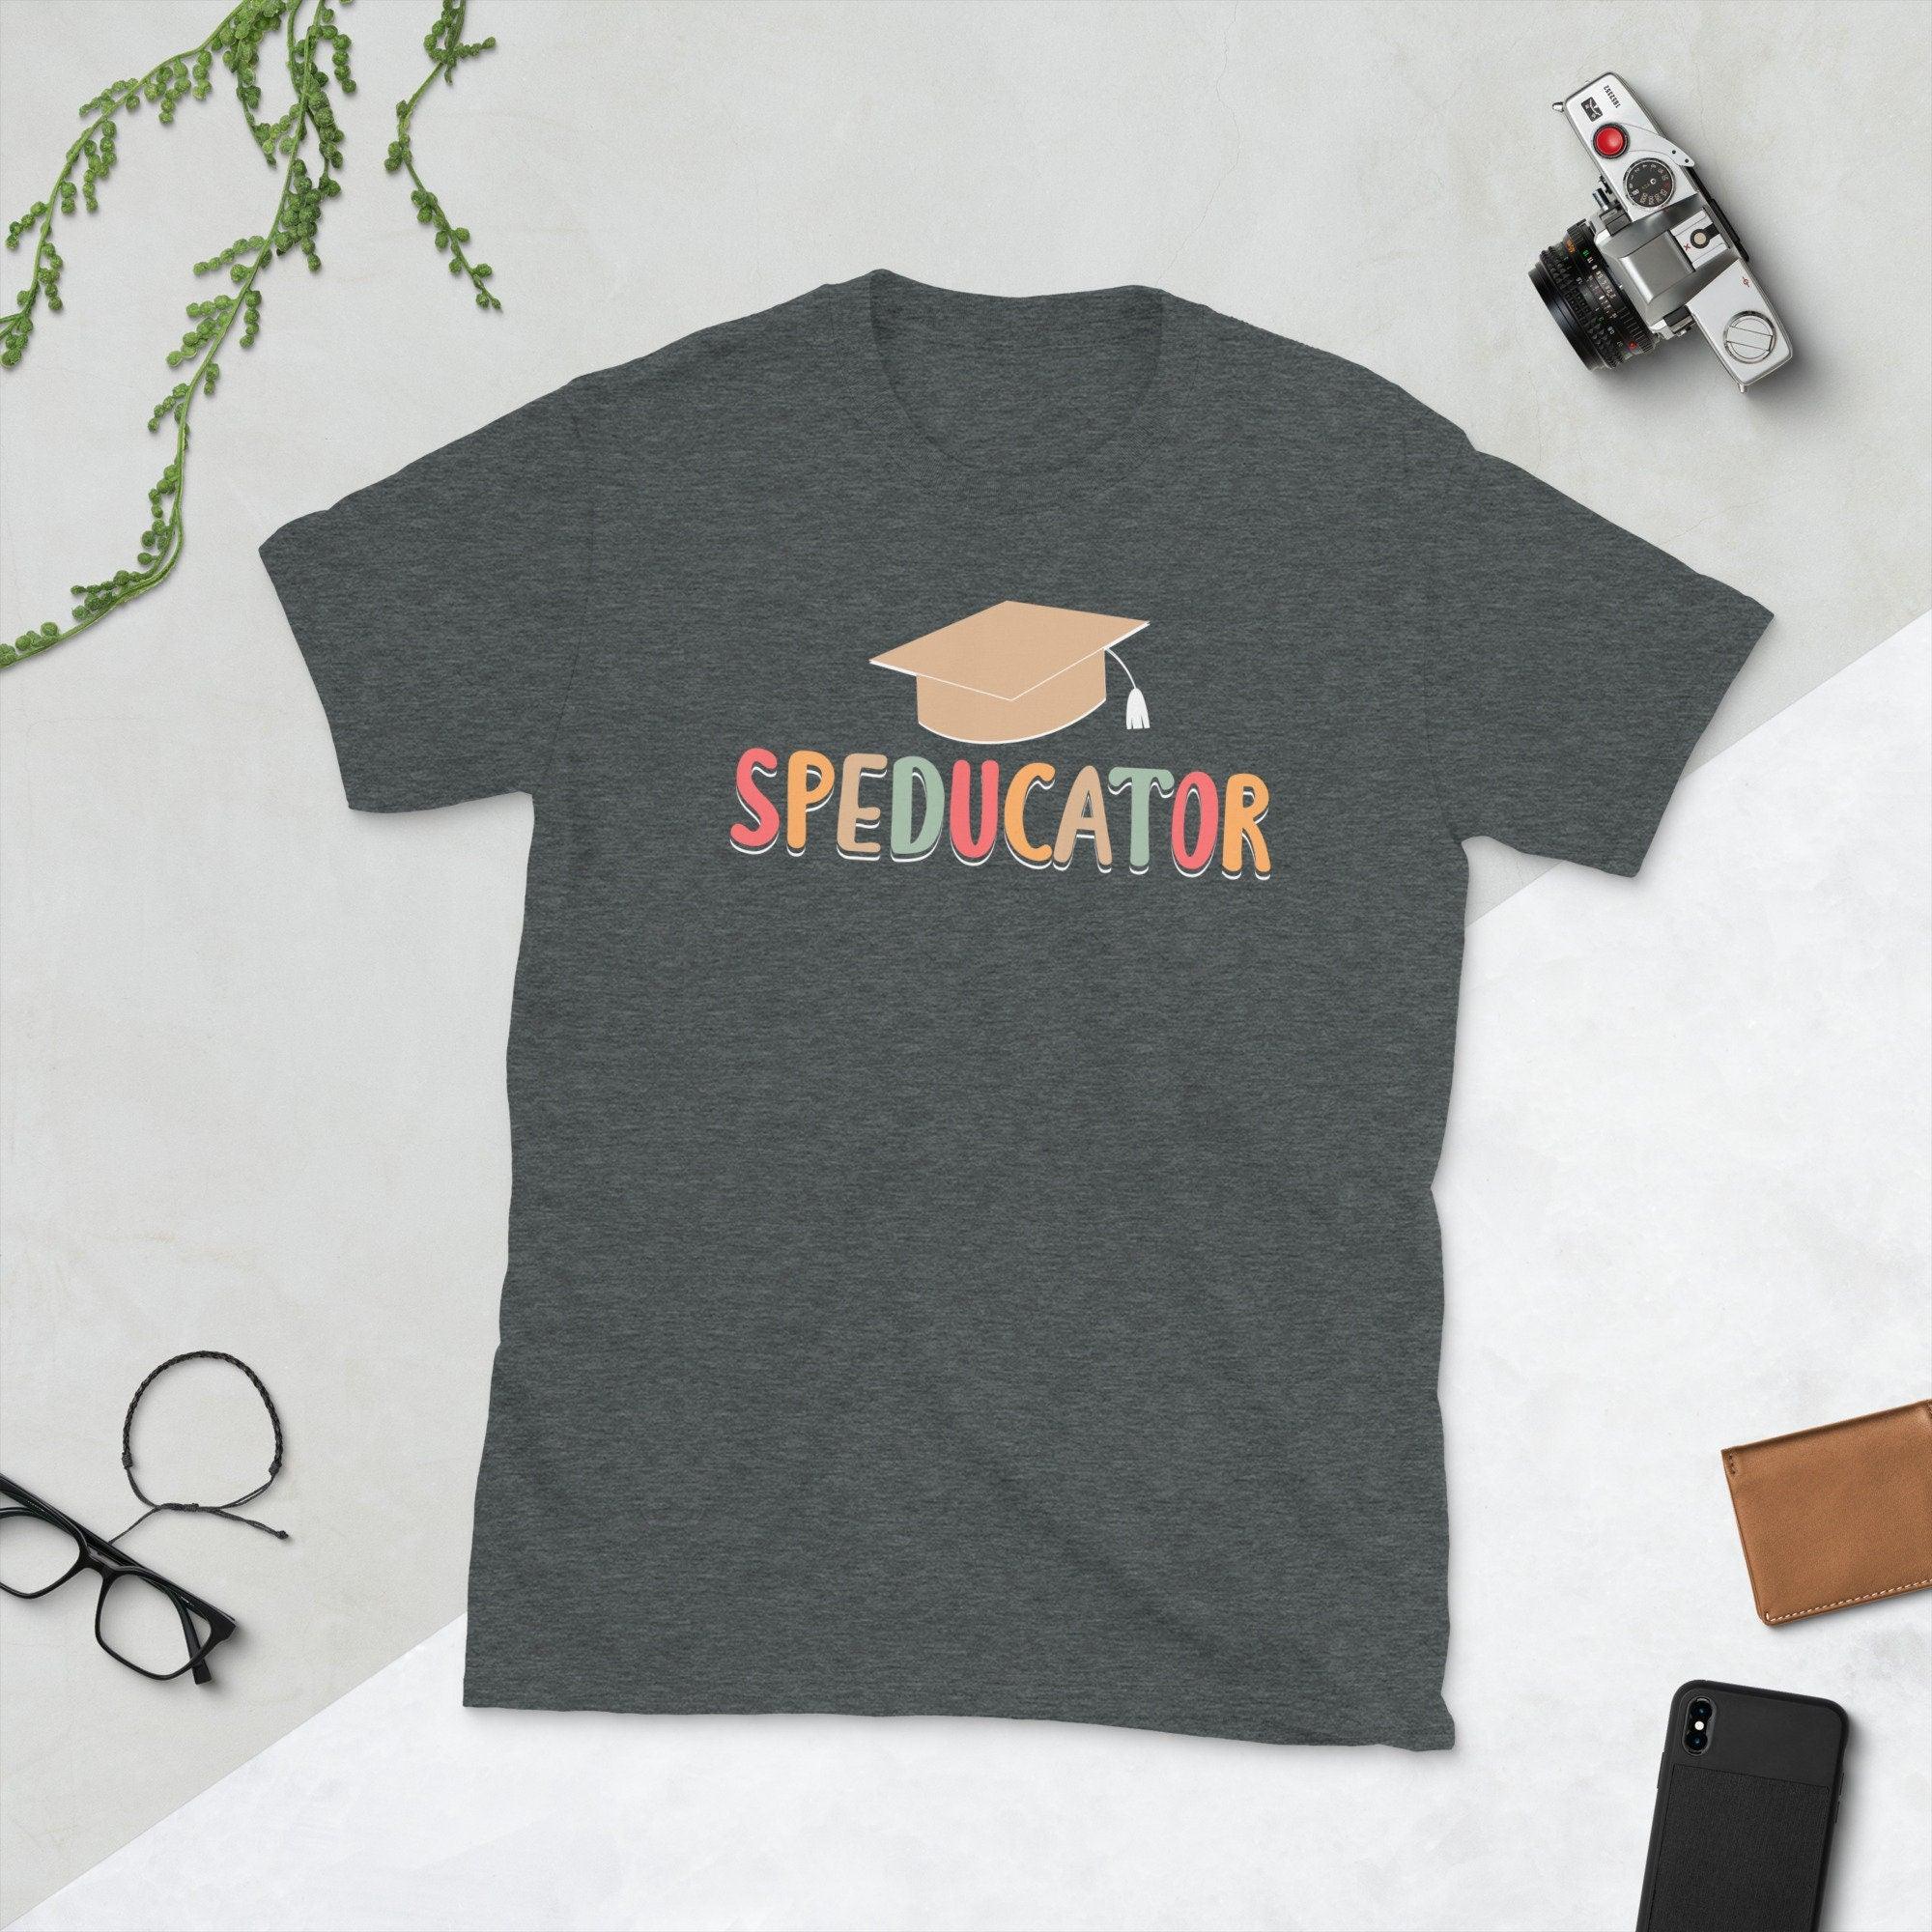 مدرس التربية الخاصة، قميص Speducator، تي شيرت هدية Sped Ed - plusminusco.com